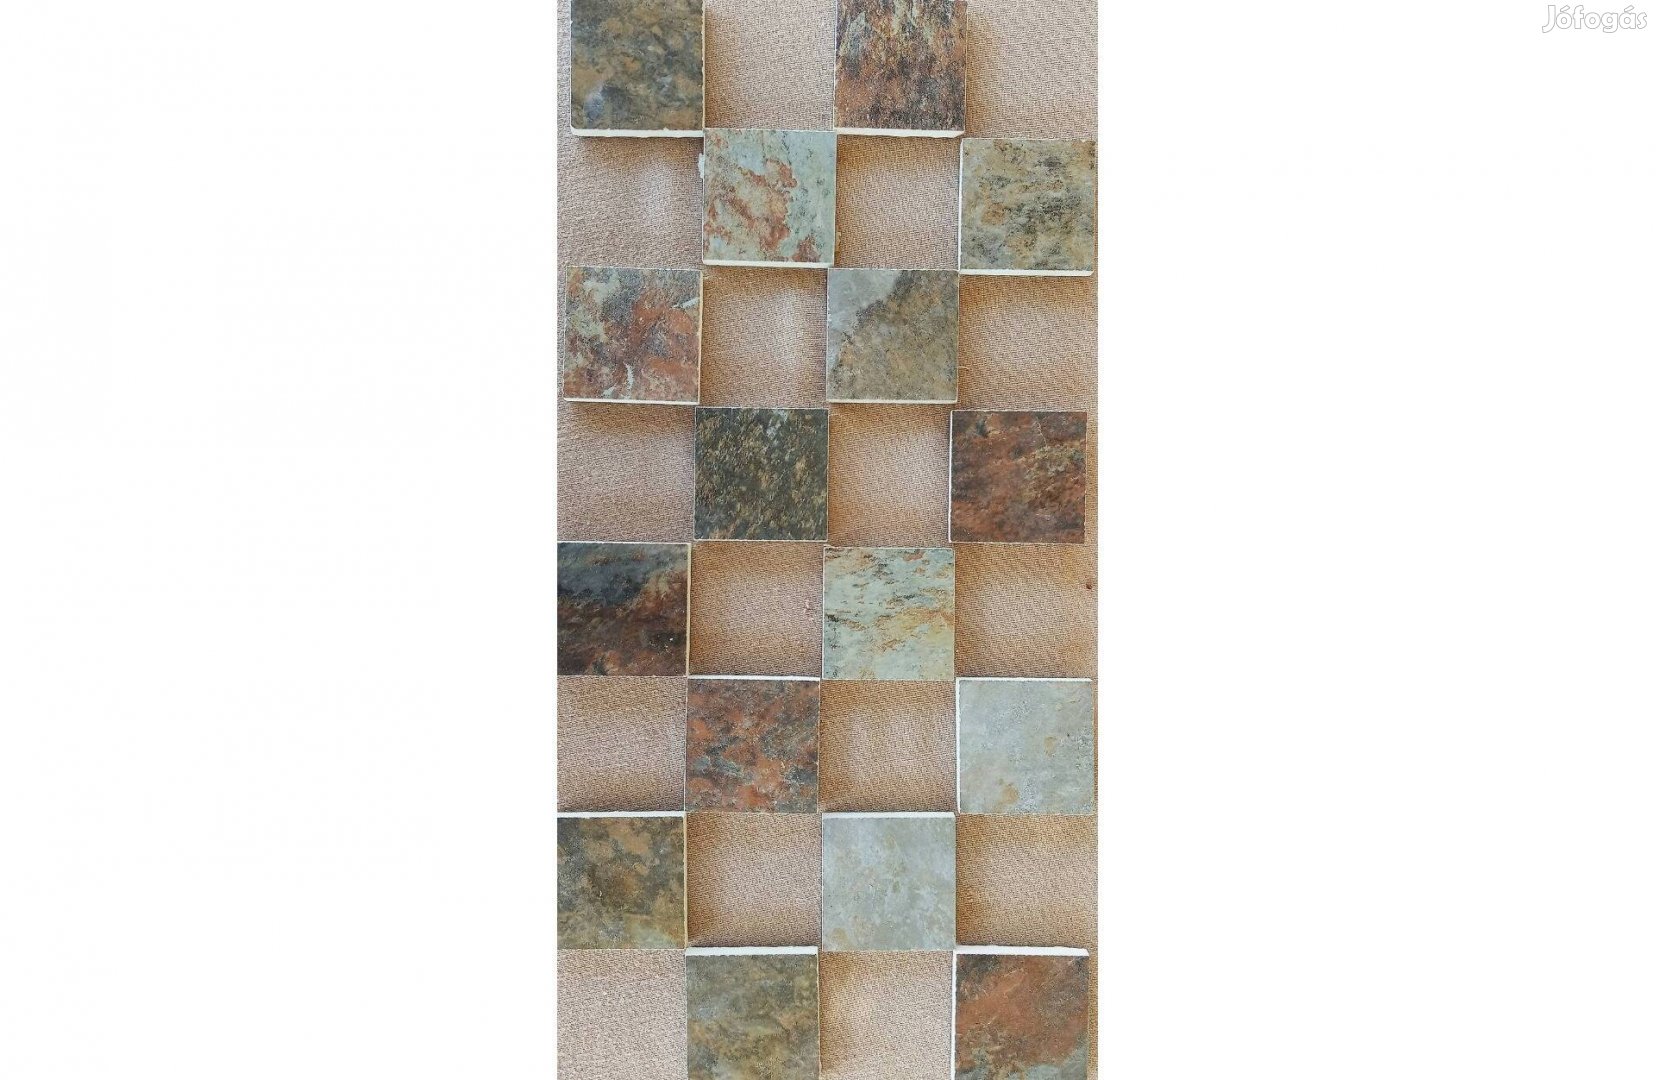 Gres fagyálló kül és beltéri padlódekor, csempedekor. 6x6 cm, spanyol